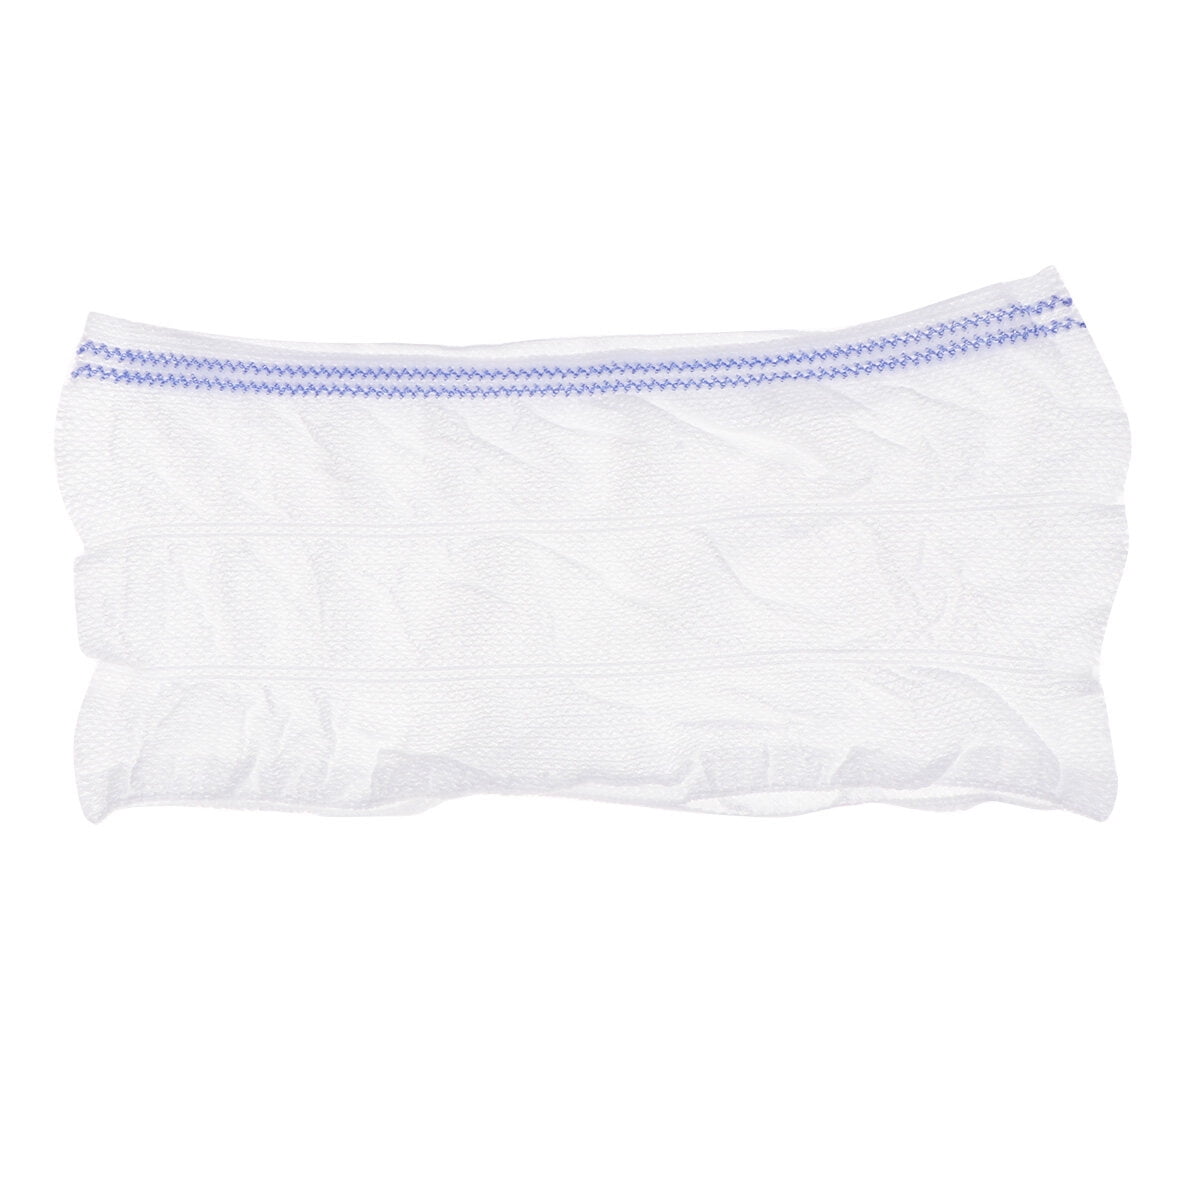 Wholesale Washable Mesh Panties Postpartum Disposable Hospital